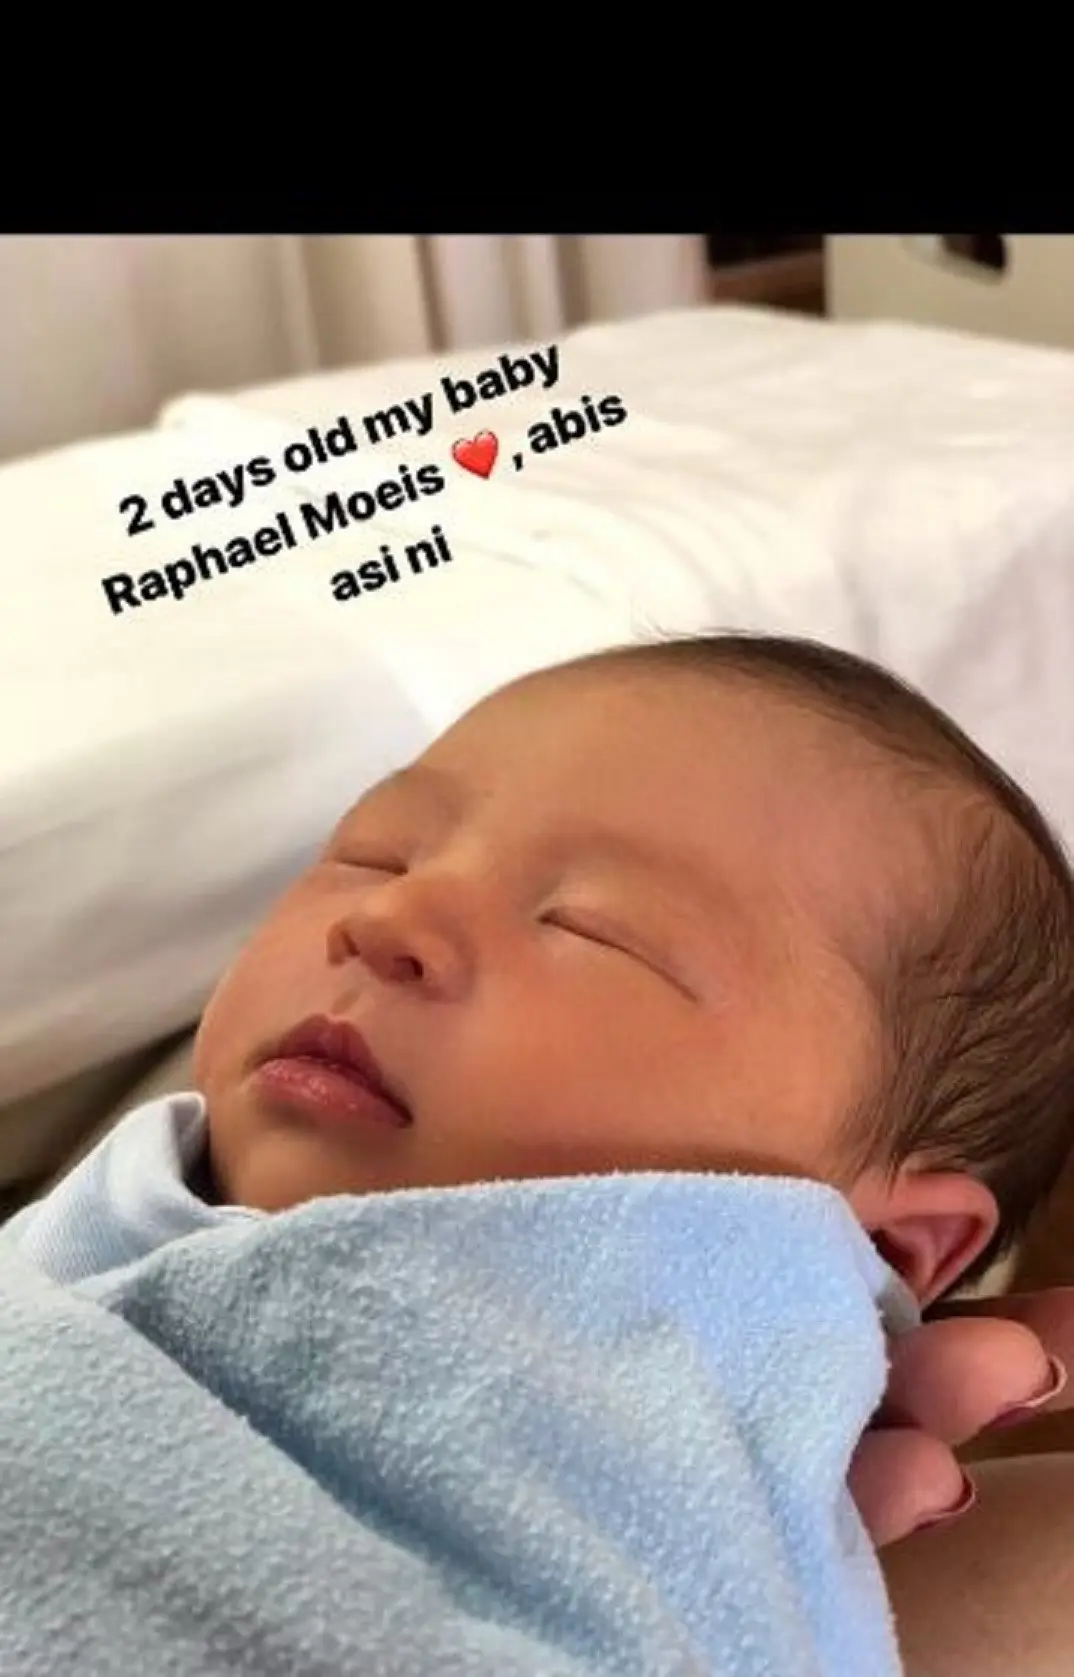 Sandra Dewi mengunggah foto anaknya, Raphael Moeis, lewat Instagram Stories-nya, Selasa (2/1/2018).